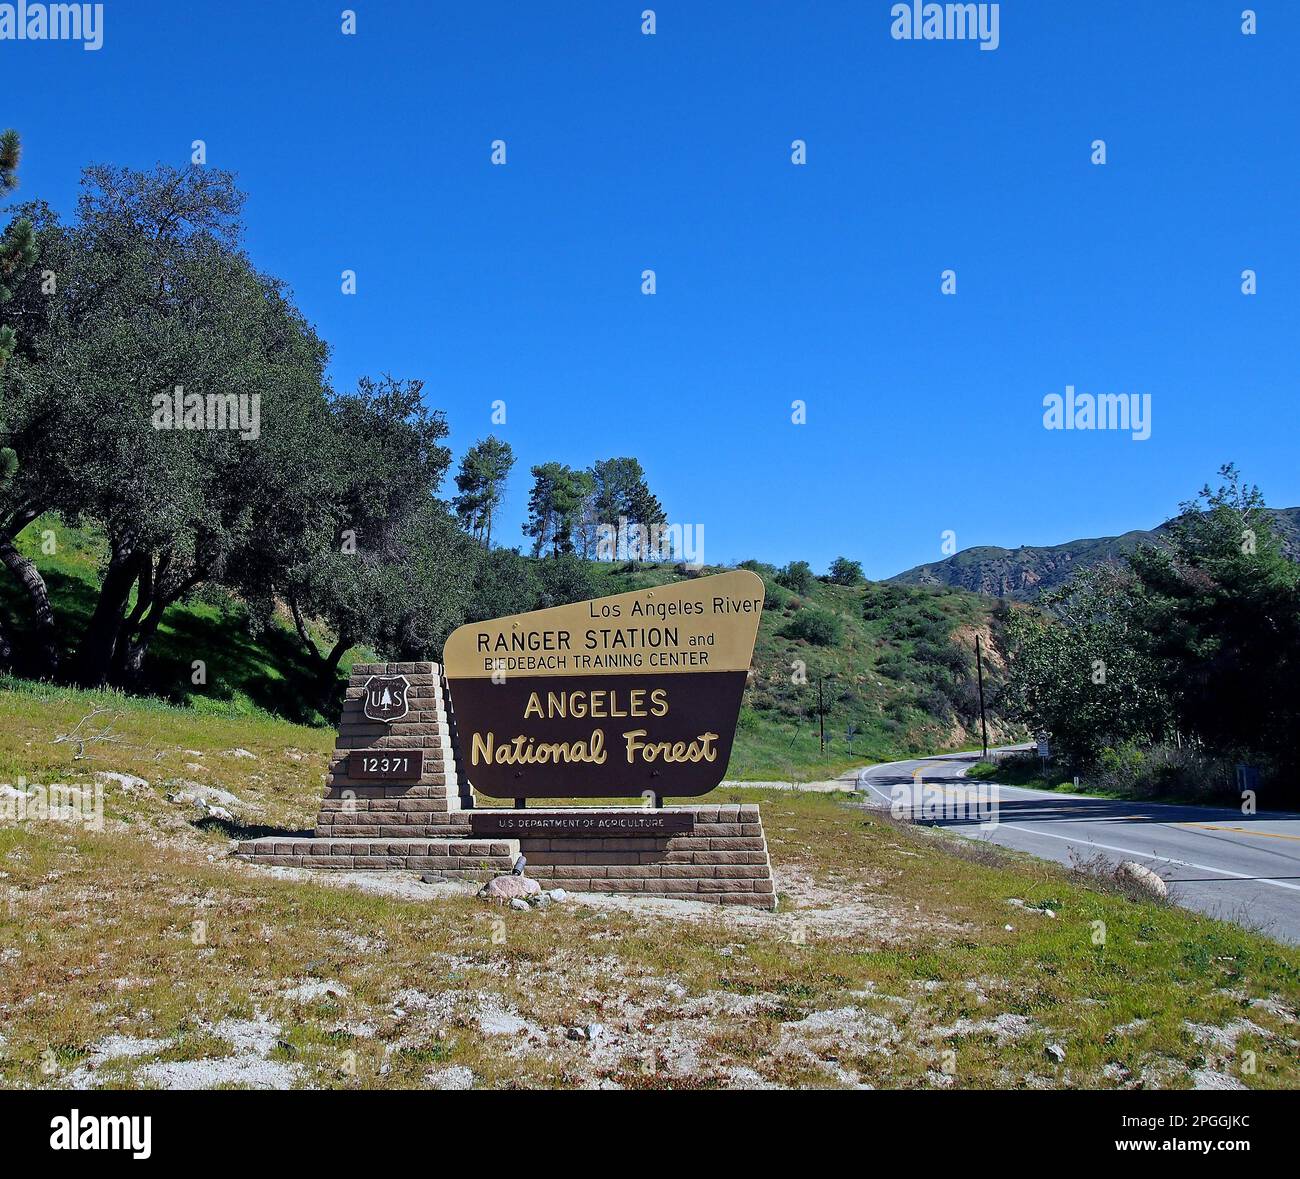 Los Angeles Ranger Station und Biedebach Training Center, Angeles National Forest, Schild, Kalifornien Stockfoto